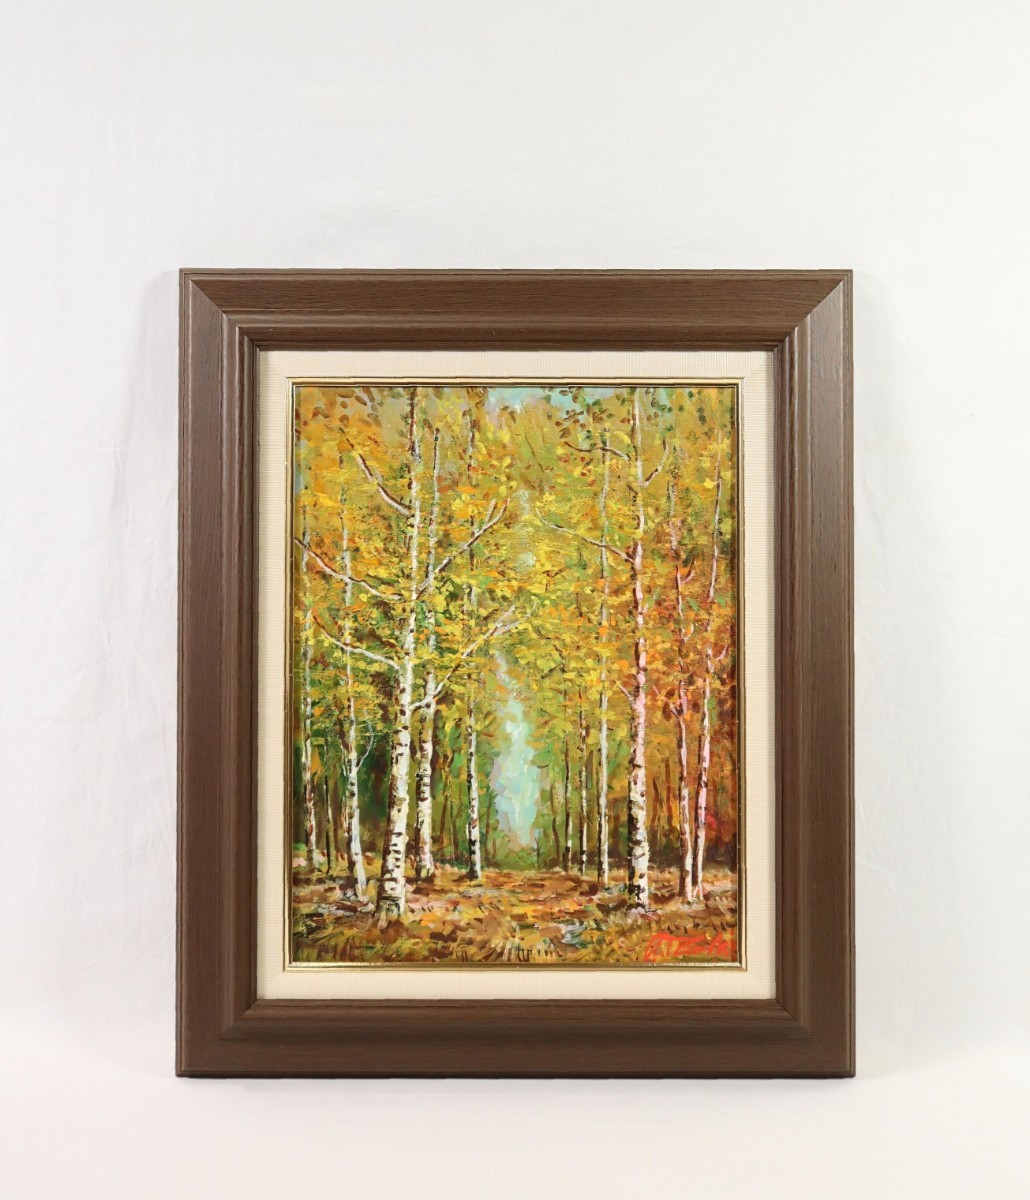 正版作品 高桥益之 油画 白桦林 尺寸 F6 出生于北海道 源养会会员 生命的一部分植根于当地 白桦林中的小路和美丽的秋叶景观 7632, 绘画, 油画, 自然, 山水画